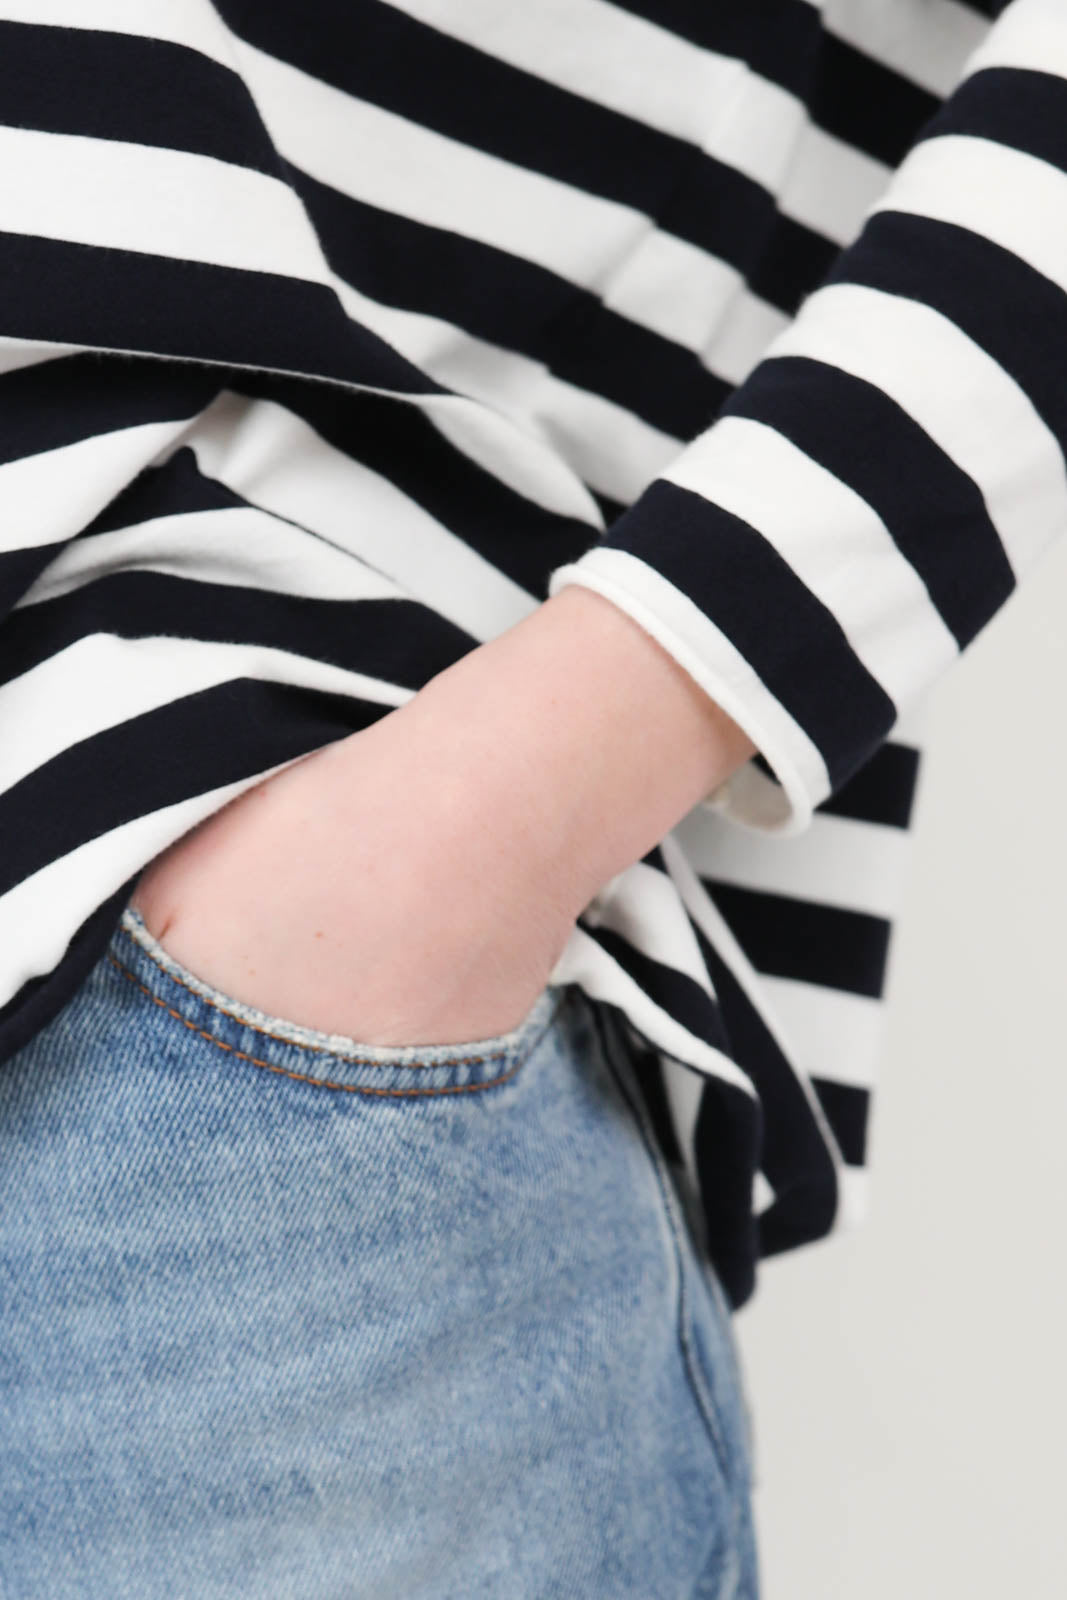 Langarm-Shirt Ata Striped Jersey in Winter White